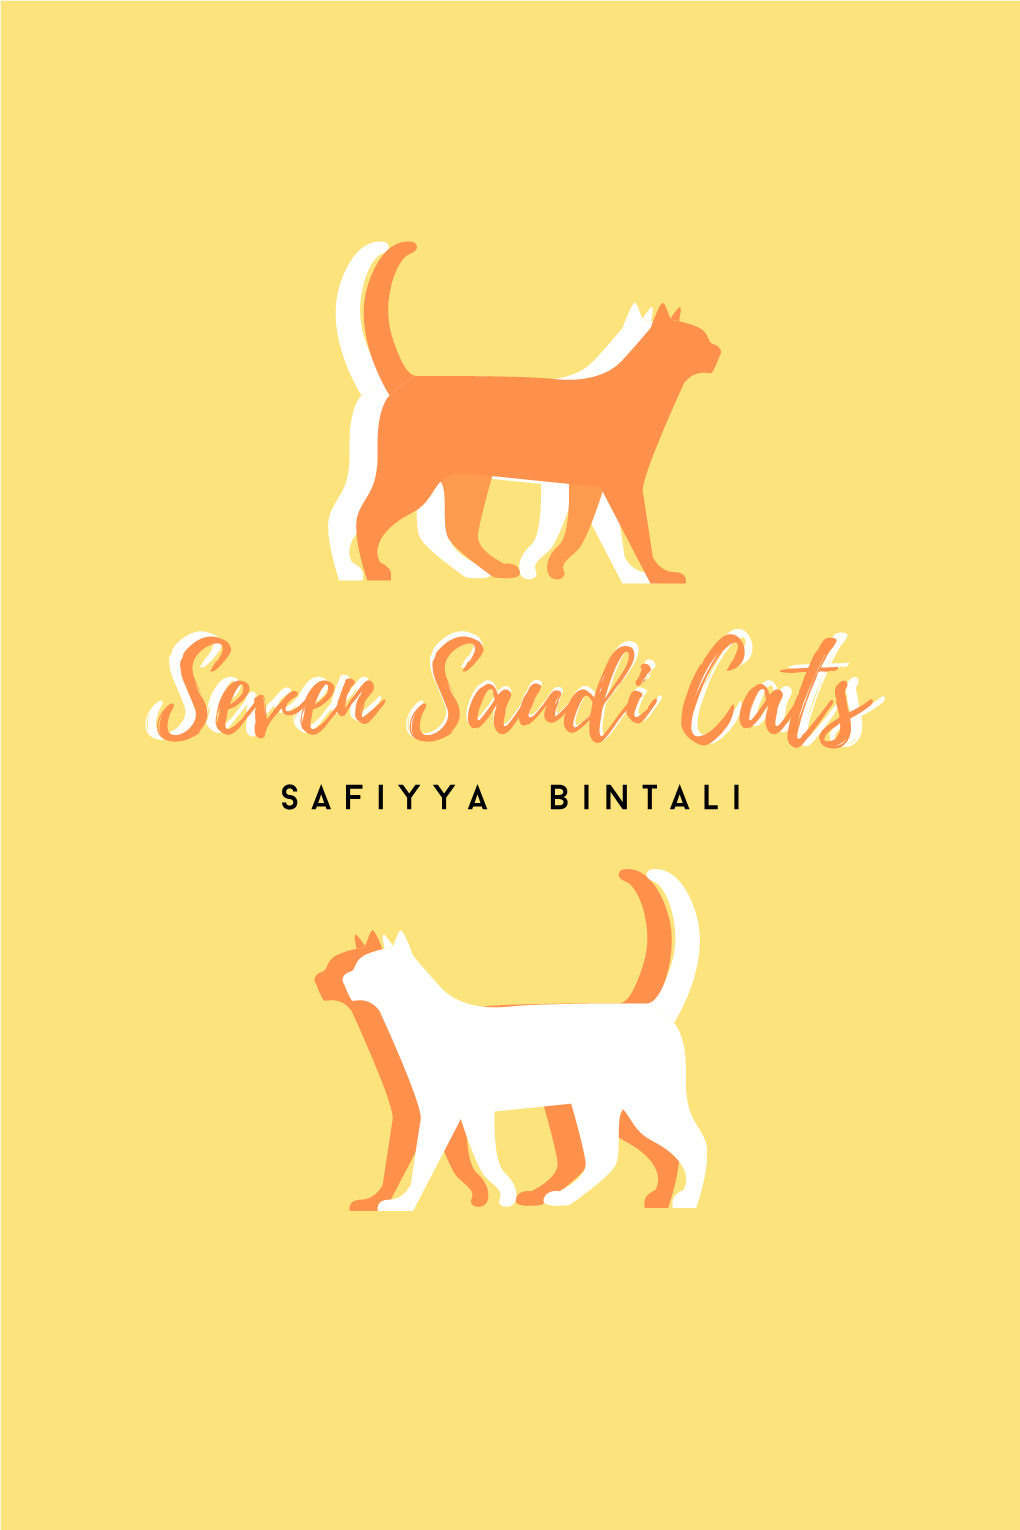 Seven Saudi Cats